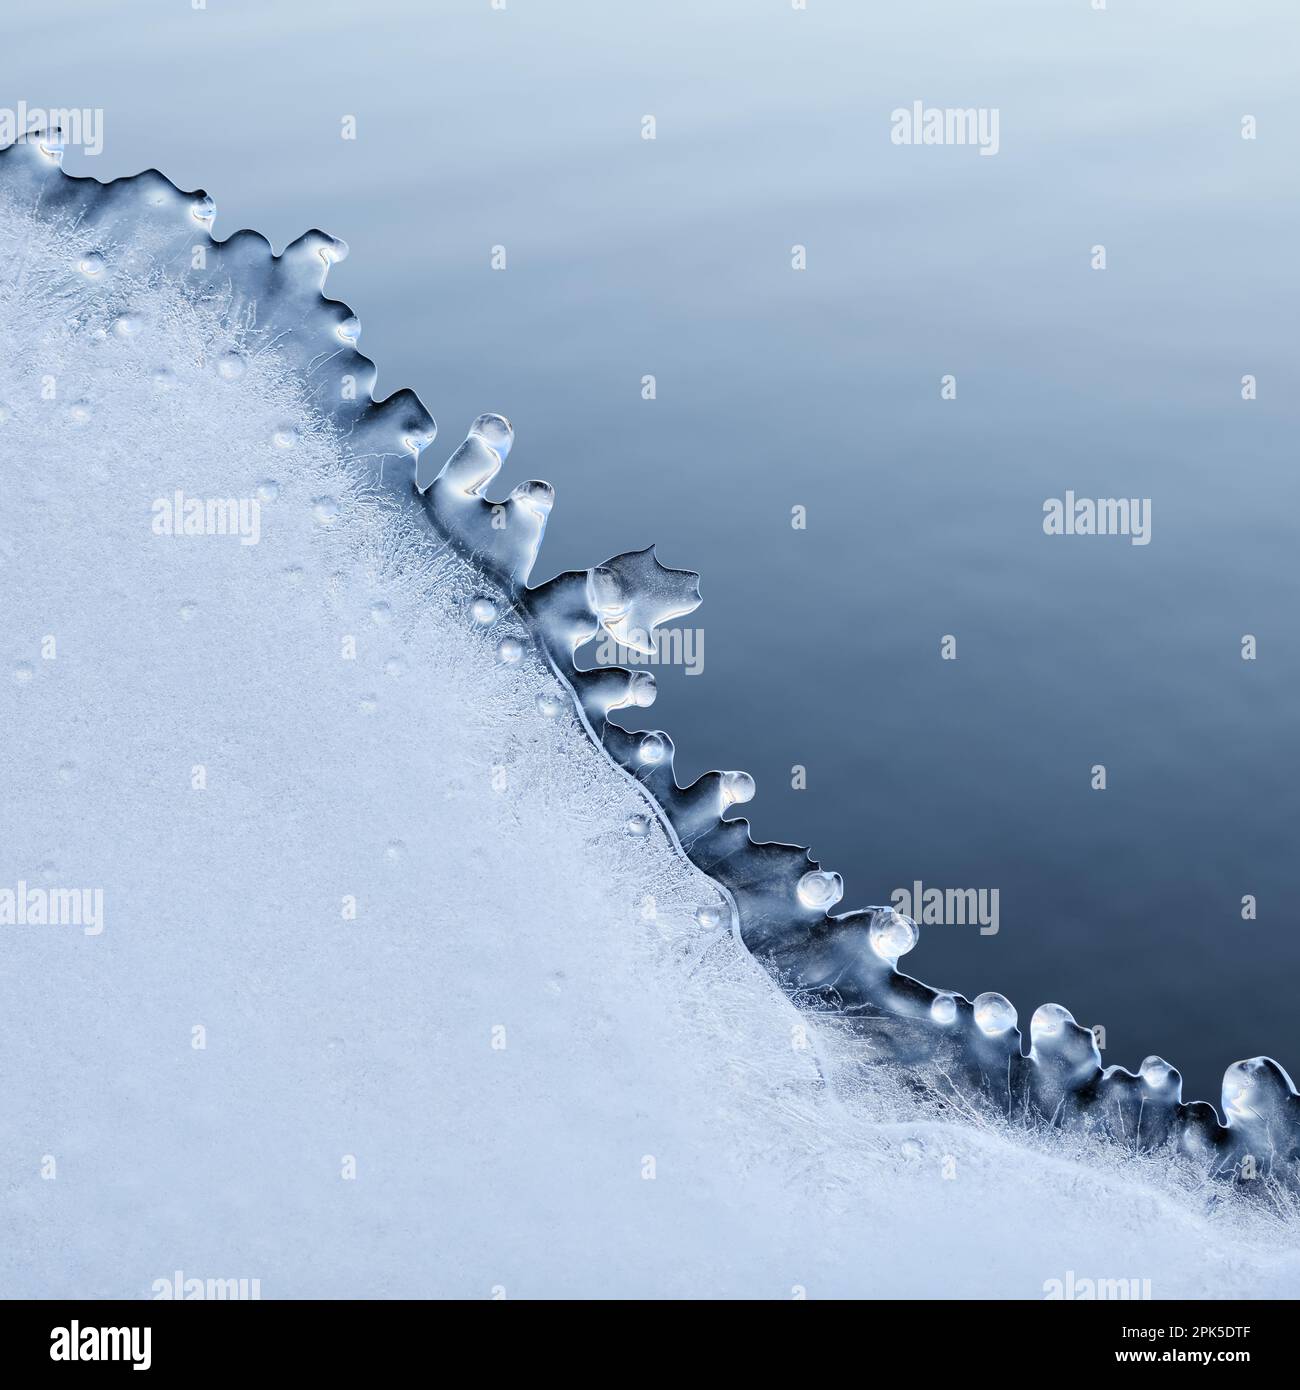 ghiaccio freddo... Piastra di ghiaccio ( alluvione invernale 2020/2021 ), scongelata, naturalmente formata dal vento e dal tempo dopo alluvione scaduta su una recinzione di filo spinato Foto Stock